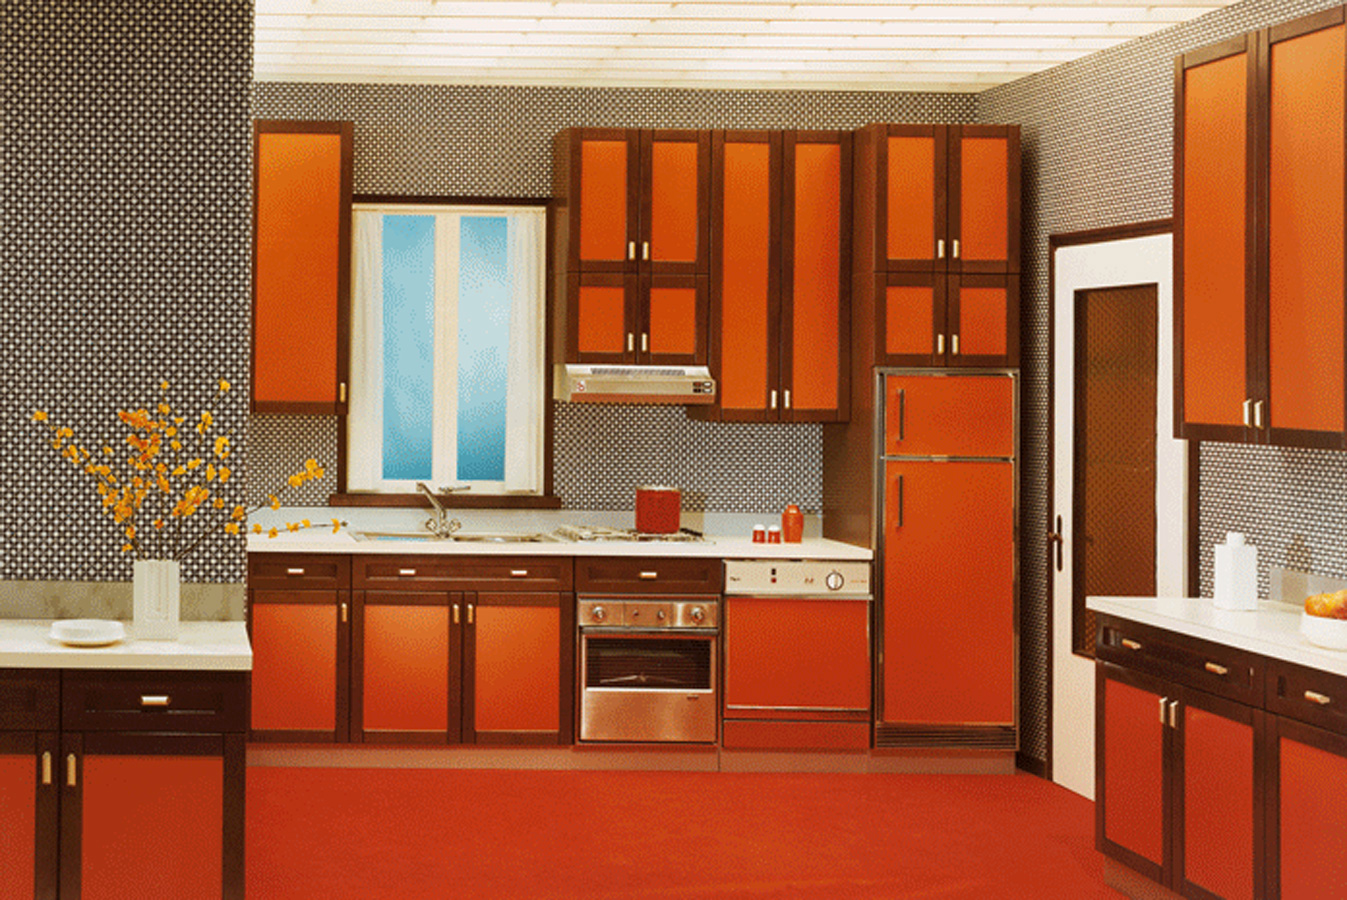 Фото 2 - Модульная кухня итальянской фабрики Cesar с панелями оранжевого цвета